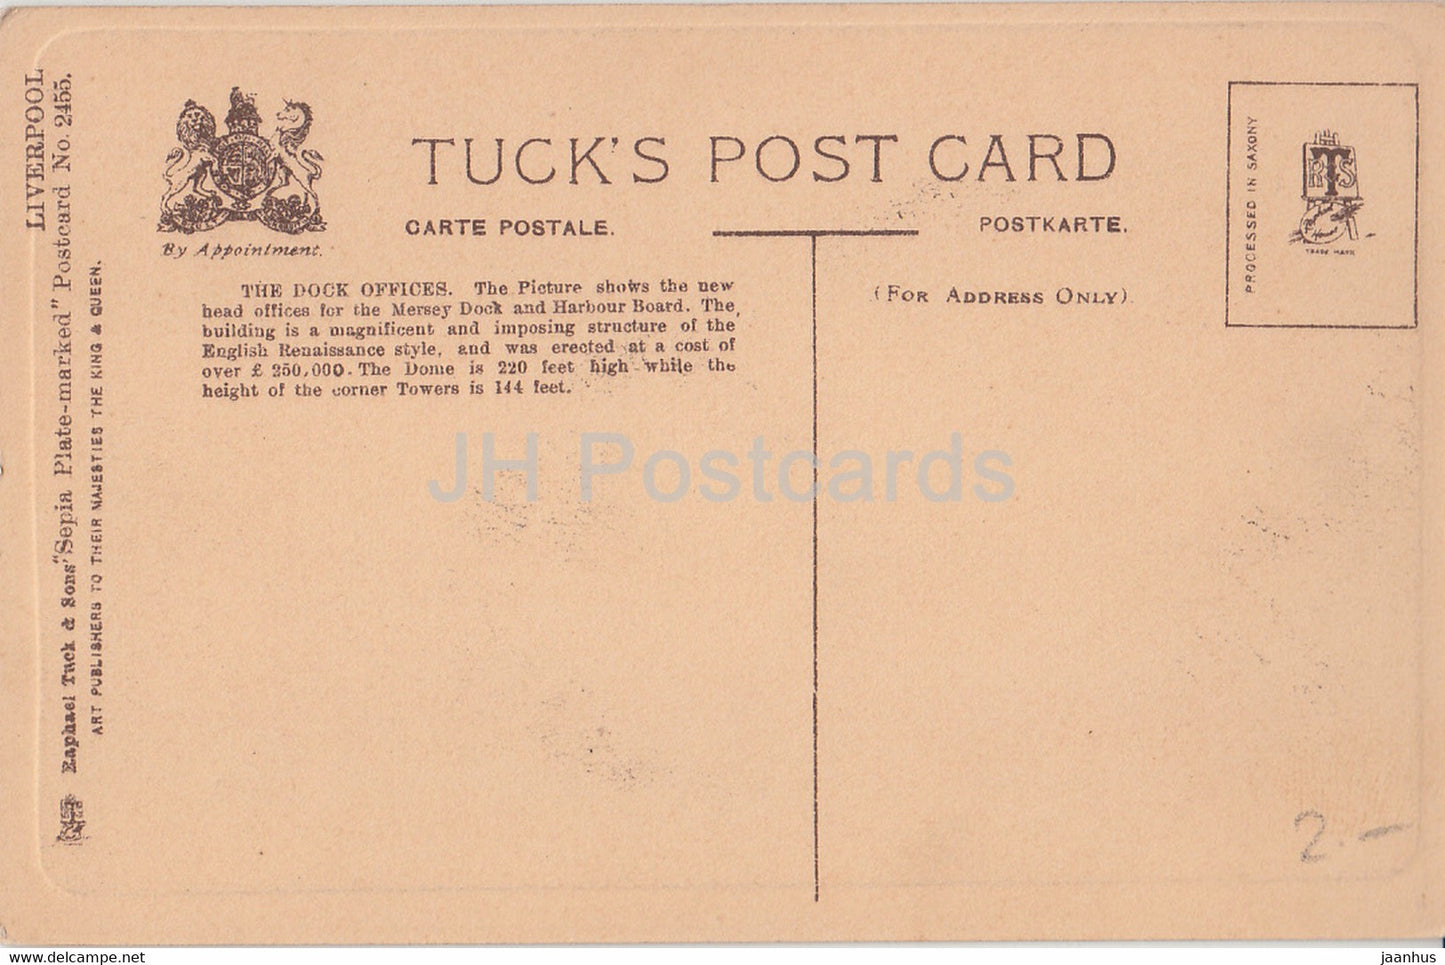 Liverpool - The Dock Offices - 2455 - alte Postkarte - England - Vereinigtes Königreich - unbenutzt